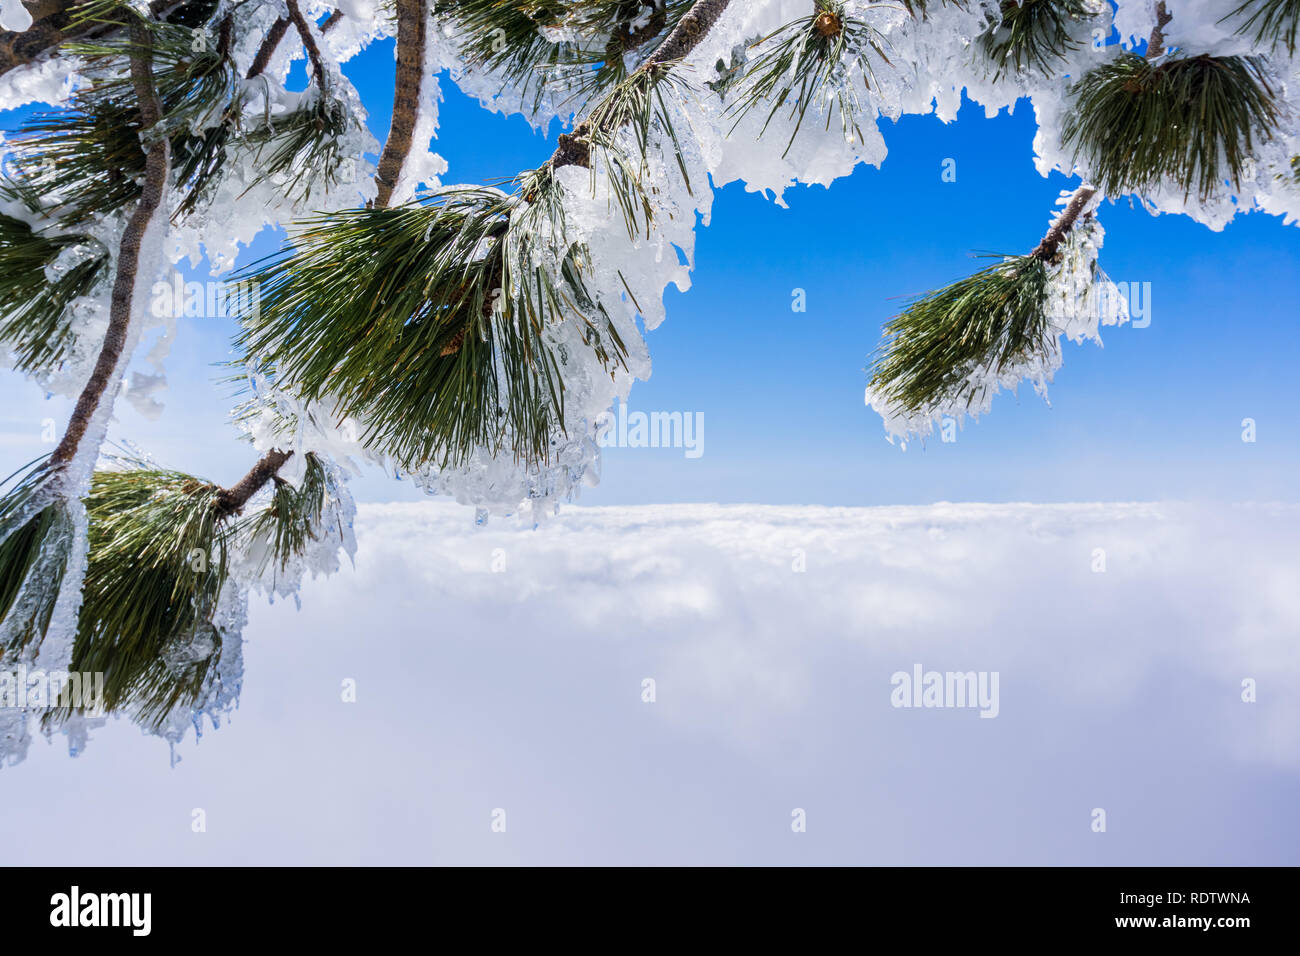 Les aiguilles de pin et de branches recouvertes de glace ; mer de nuages et ciel bleu en arrière-plan ; le mont San Antonio (Mt Baldy), Californie Banque D'Images